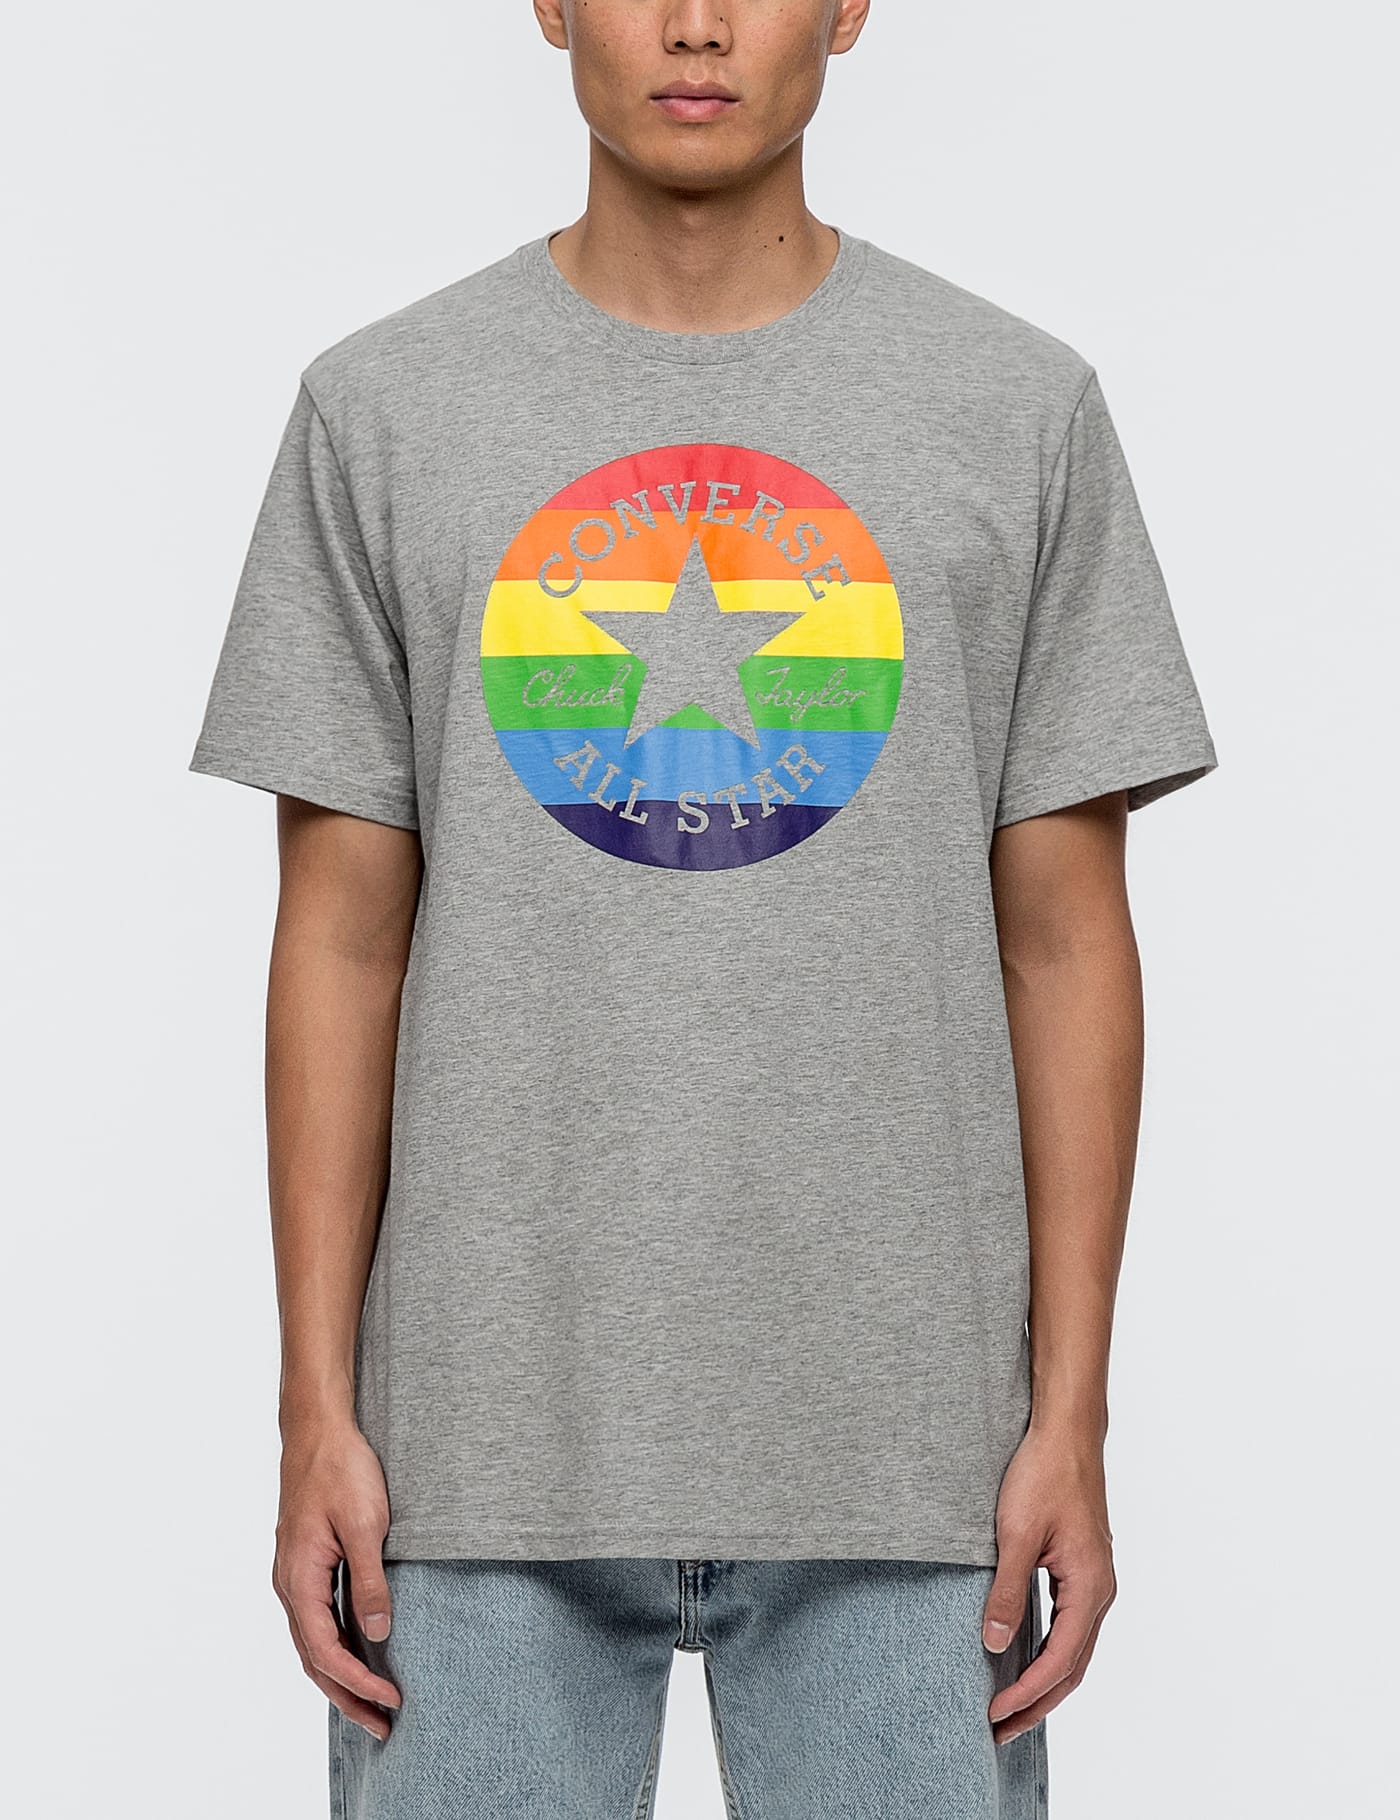 converse pride sweatshirt